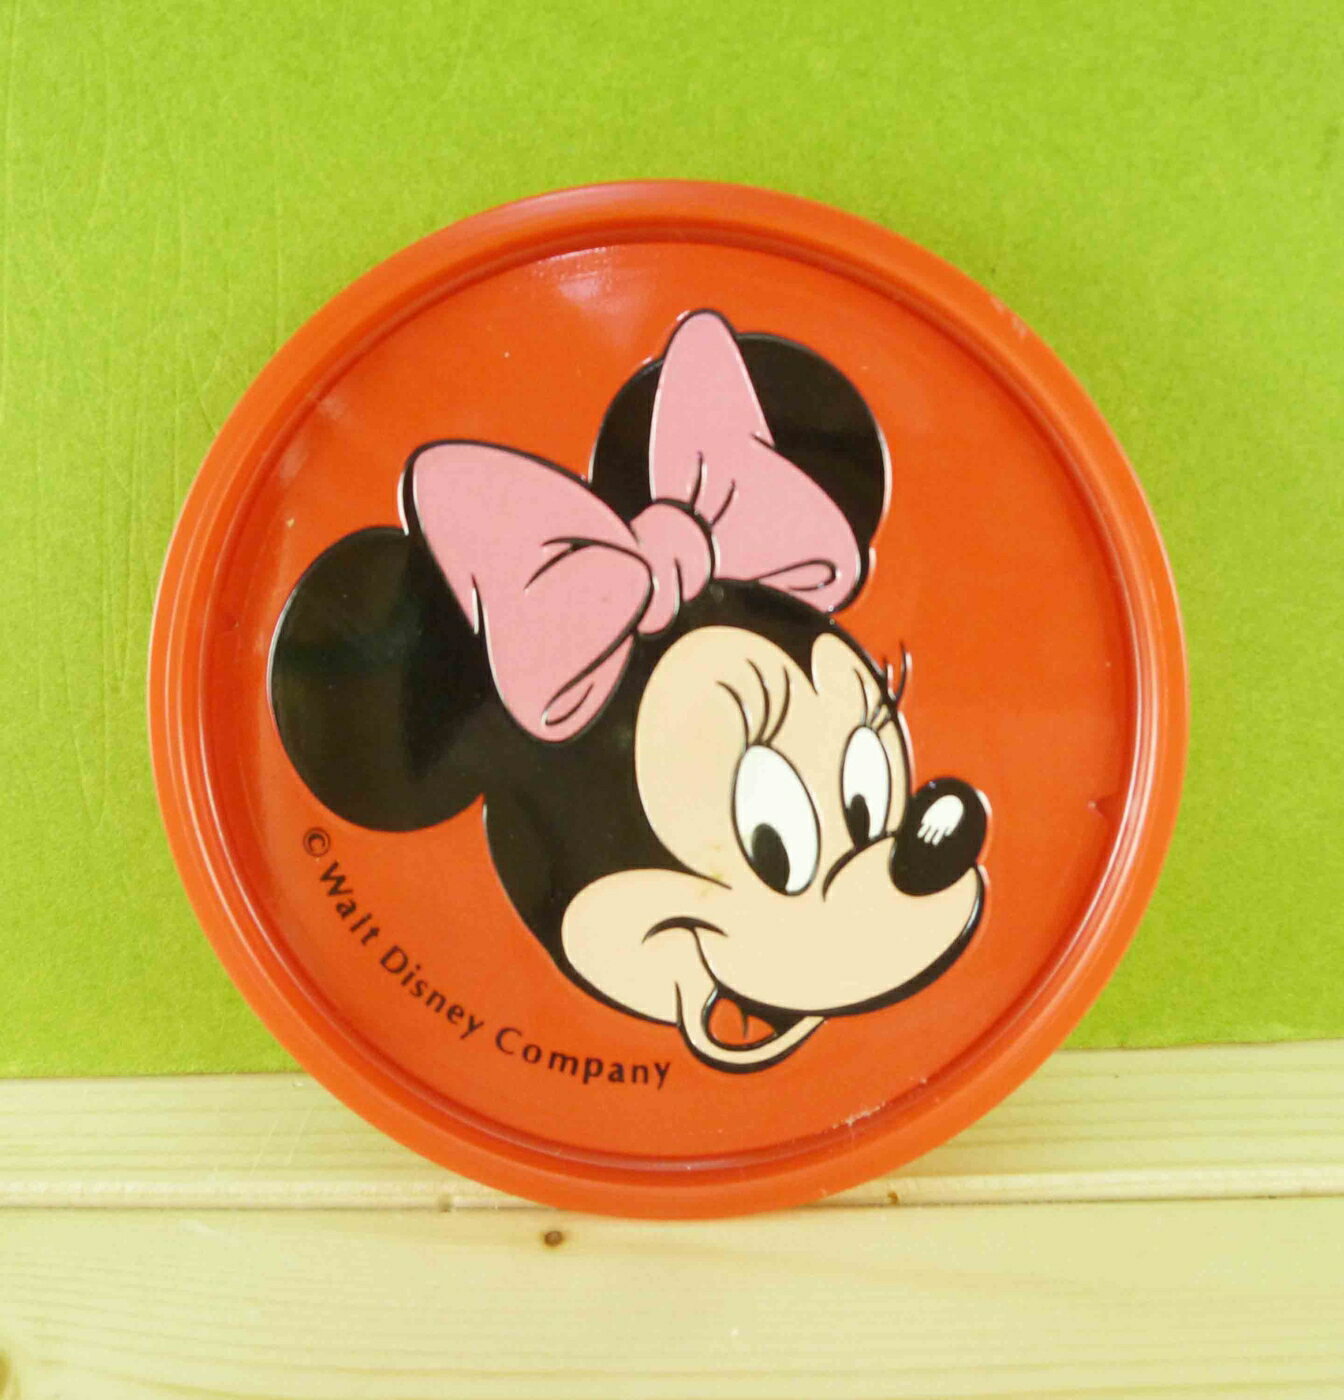 【震撼精品百貨】Micky Mouse 米奇/米妮 杯墊-米妮圖案-紅色 震撼日式精品百貨